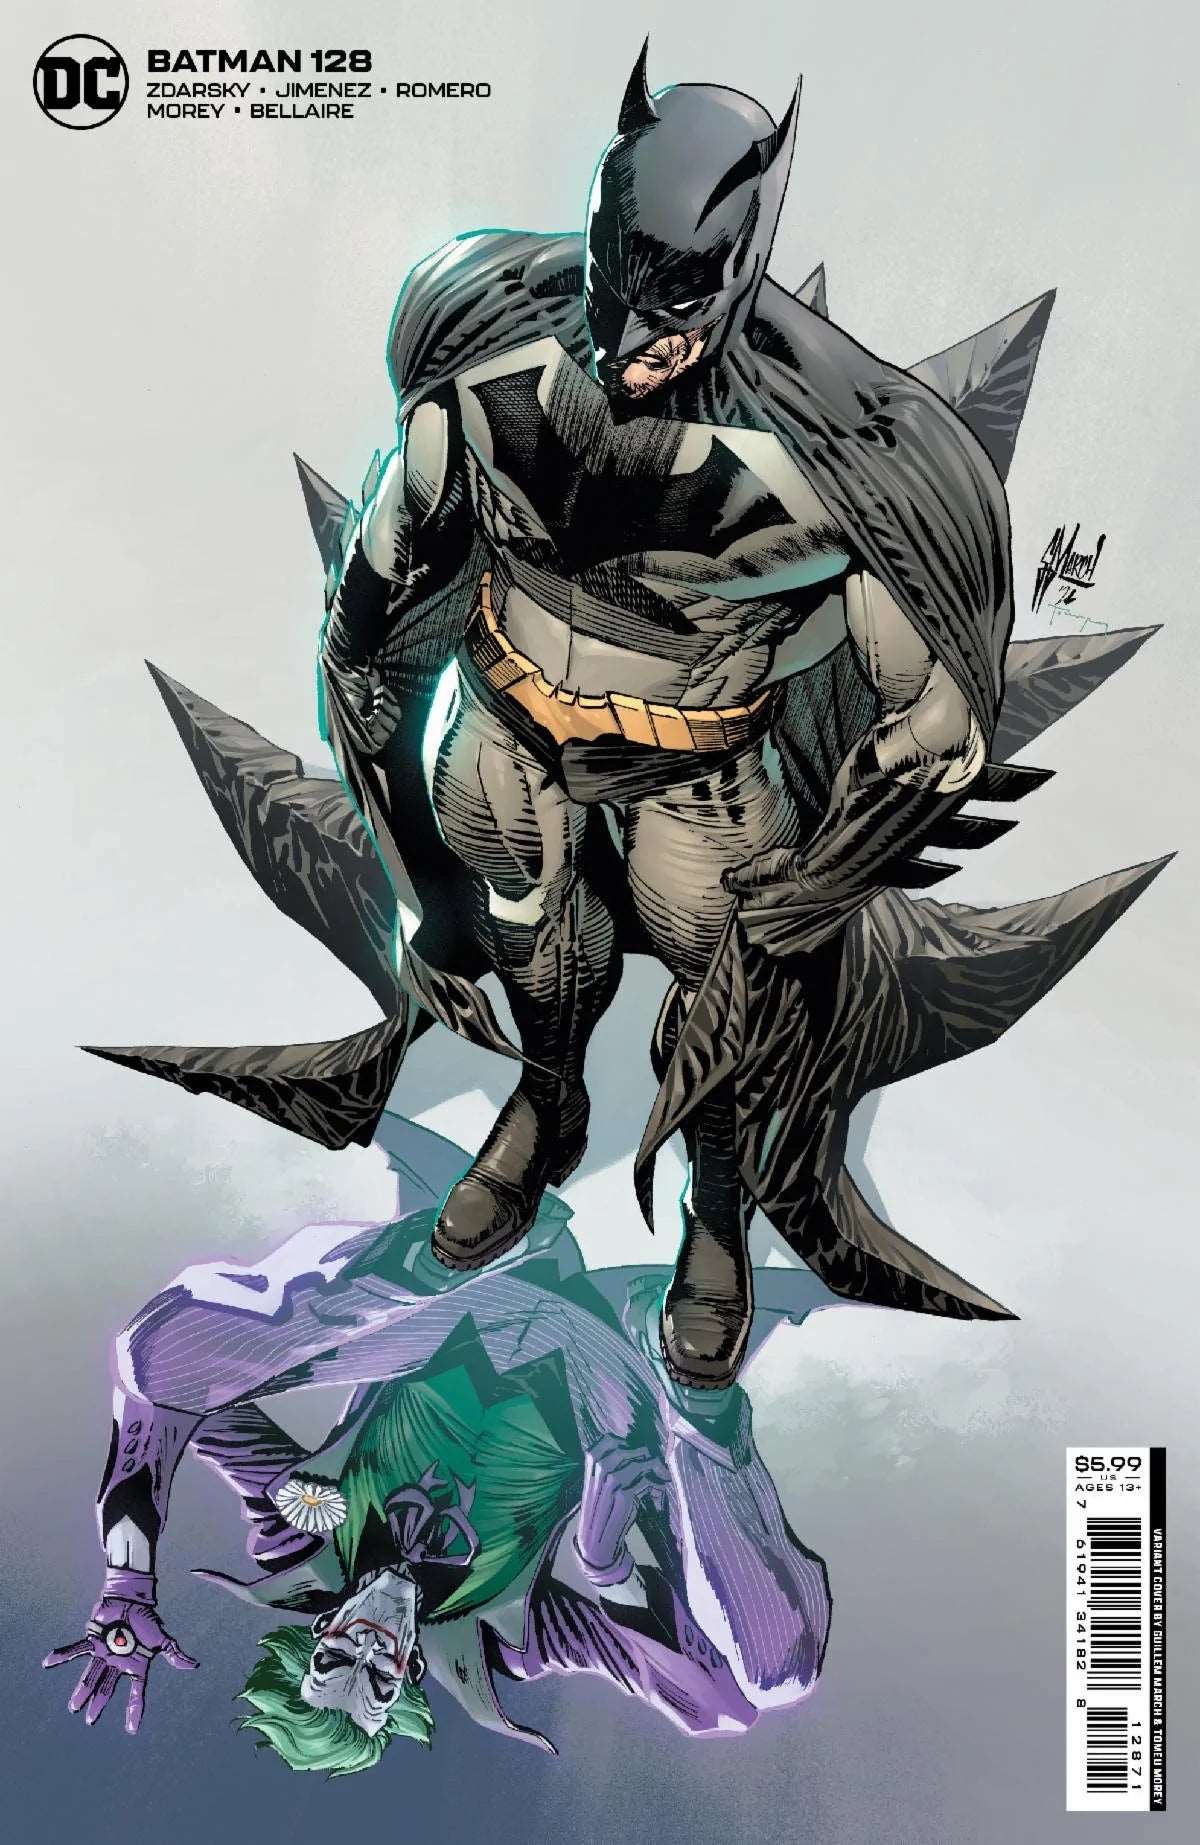 BATMAN #128 - The Comic Construct